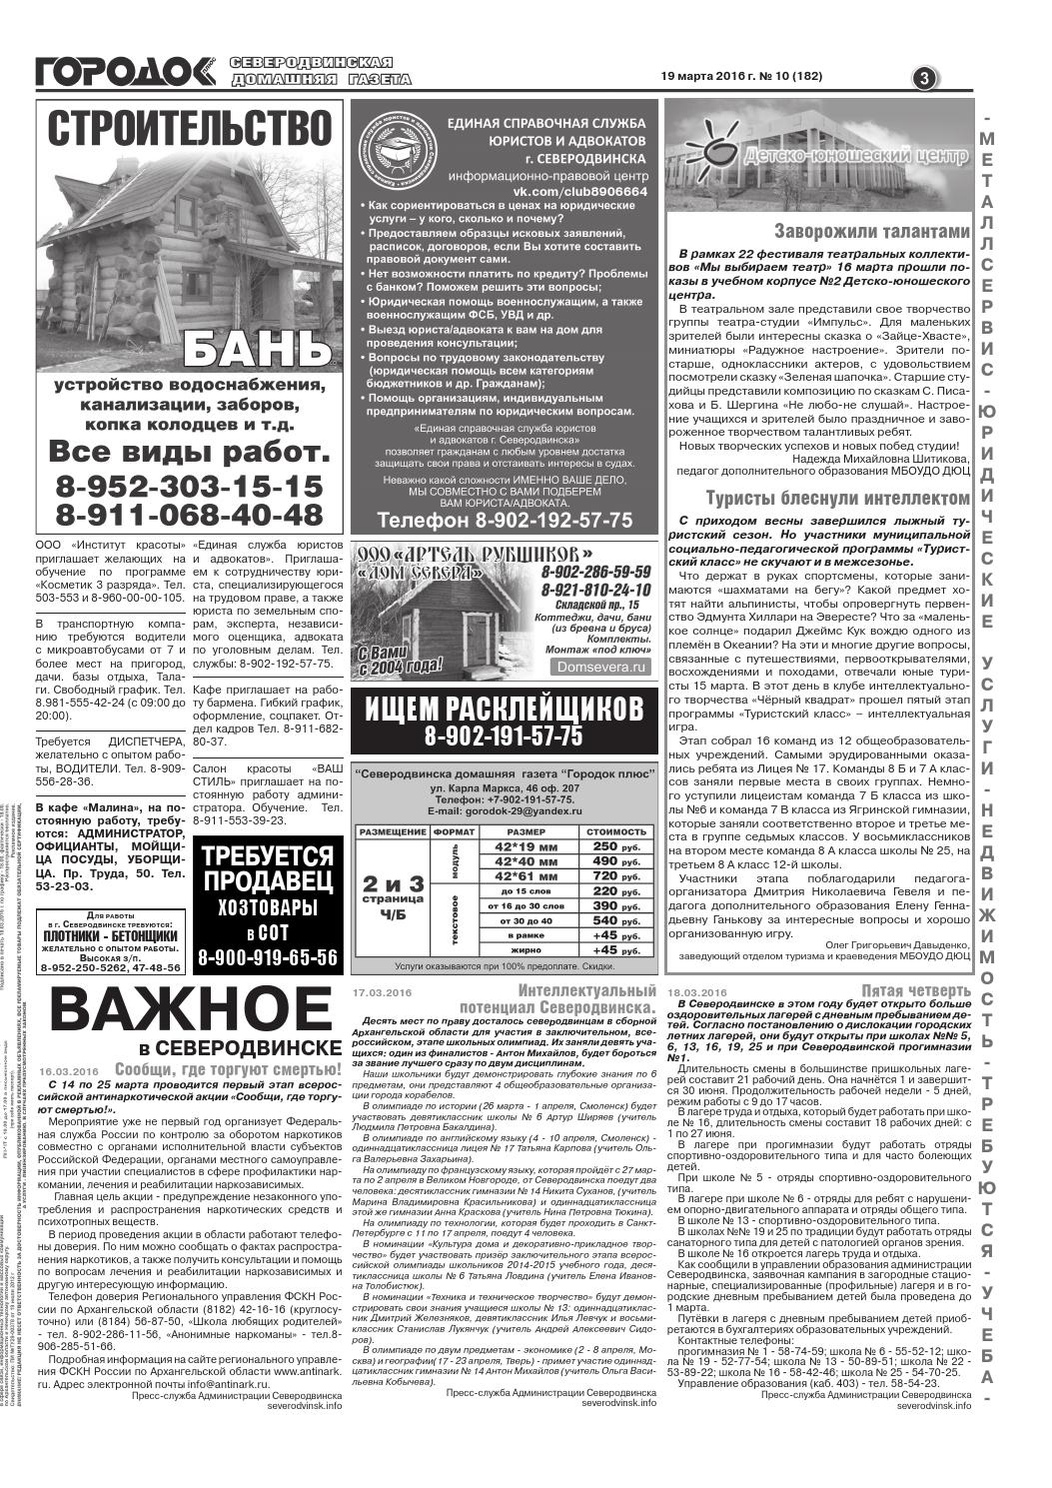 Городок плюс, выпуск номер 10 от 19 марта 2016 года, страница 3.